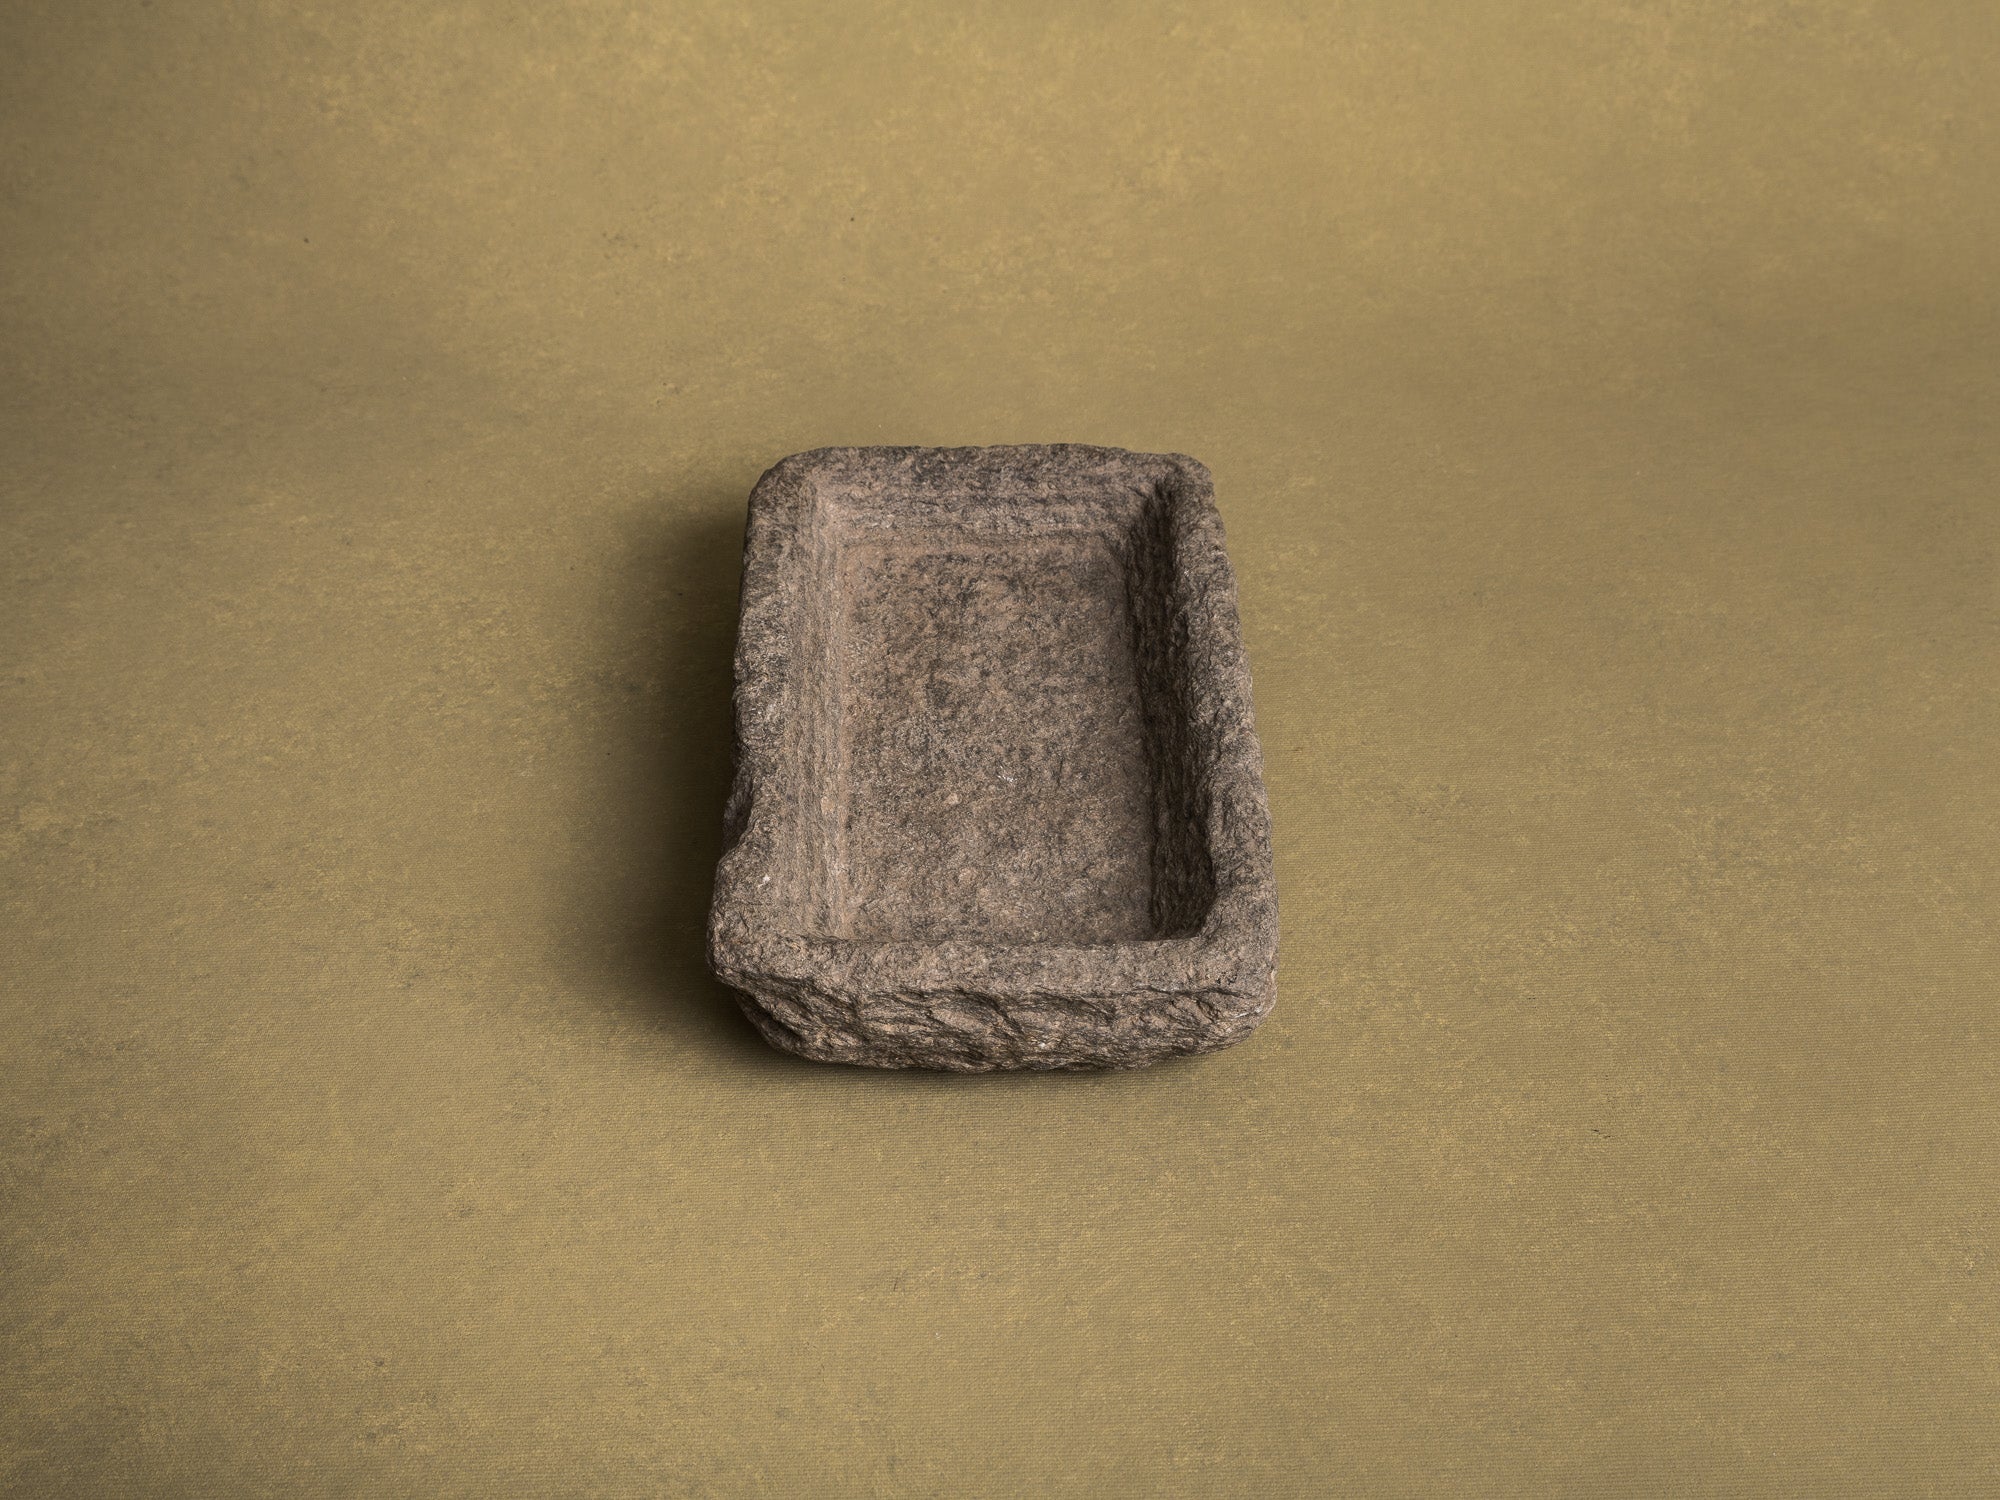 Coupe monolithe en schiste du Piemont, art paysan, Italie (XVIIIe siècle)..Carved dug-out Piedmont shale stone bowl, Peasant art, Italy (18th century)